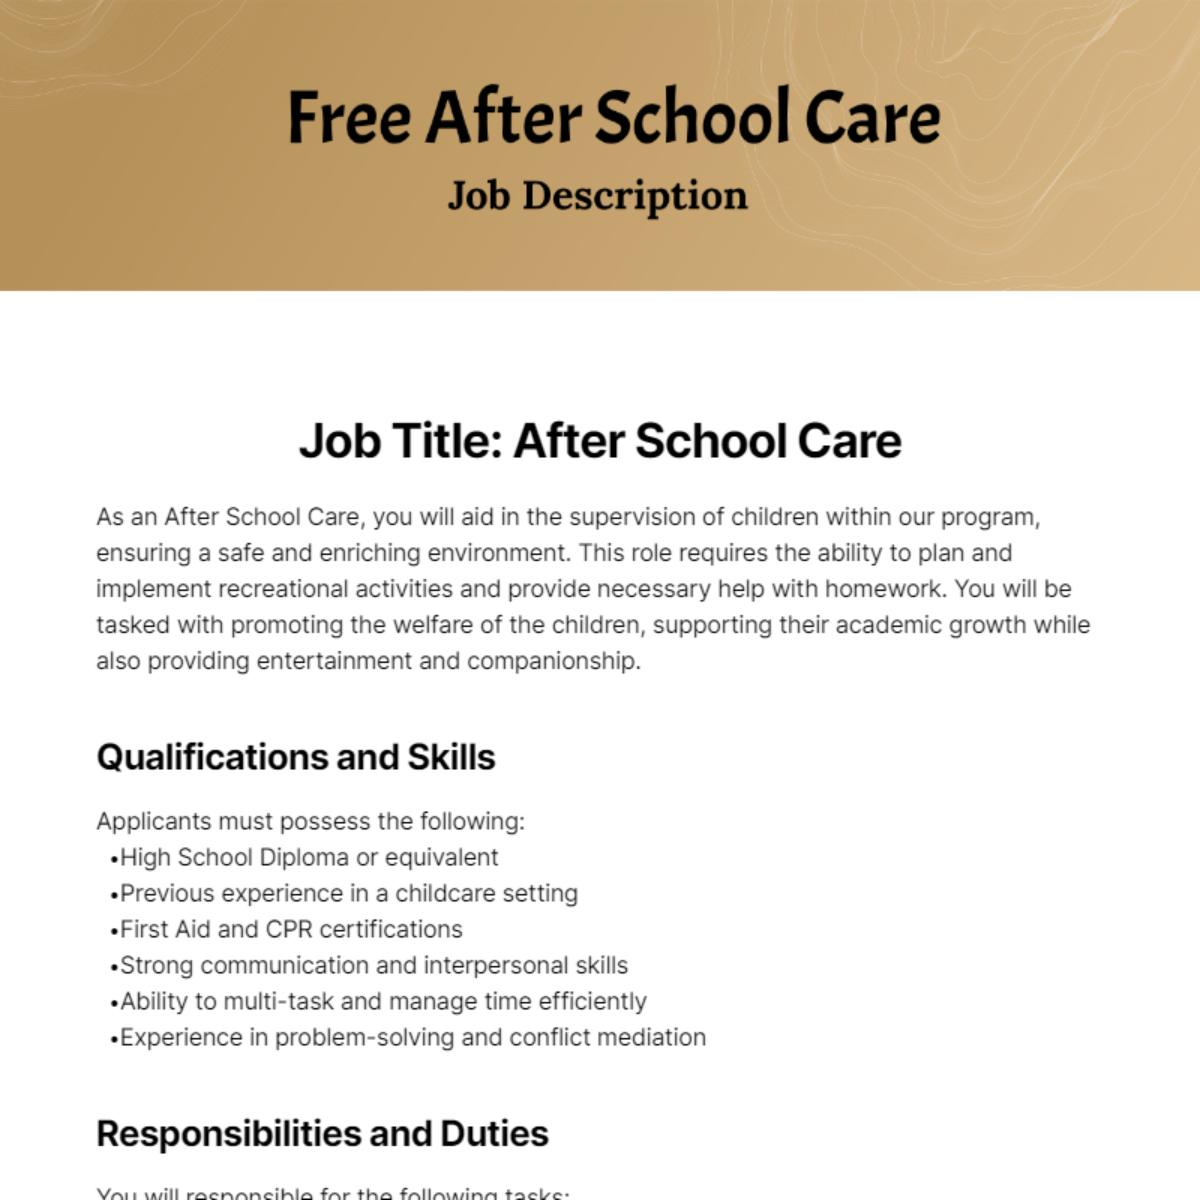 Free After School Care Job Description Template